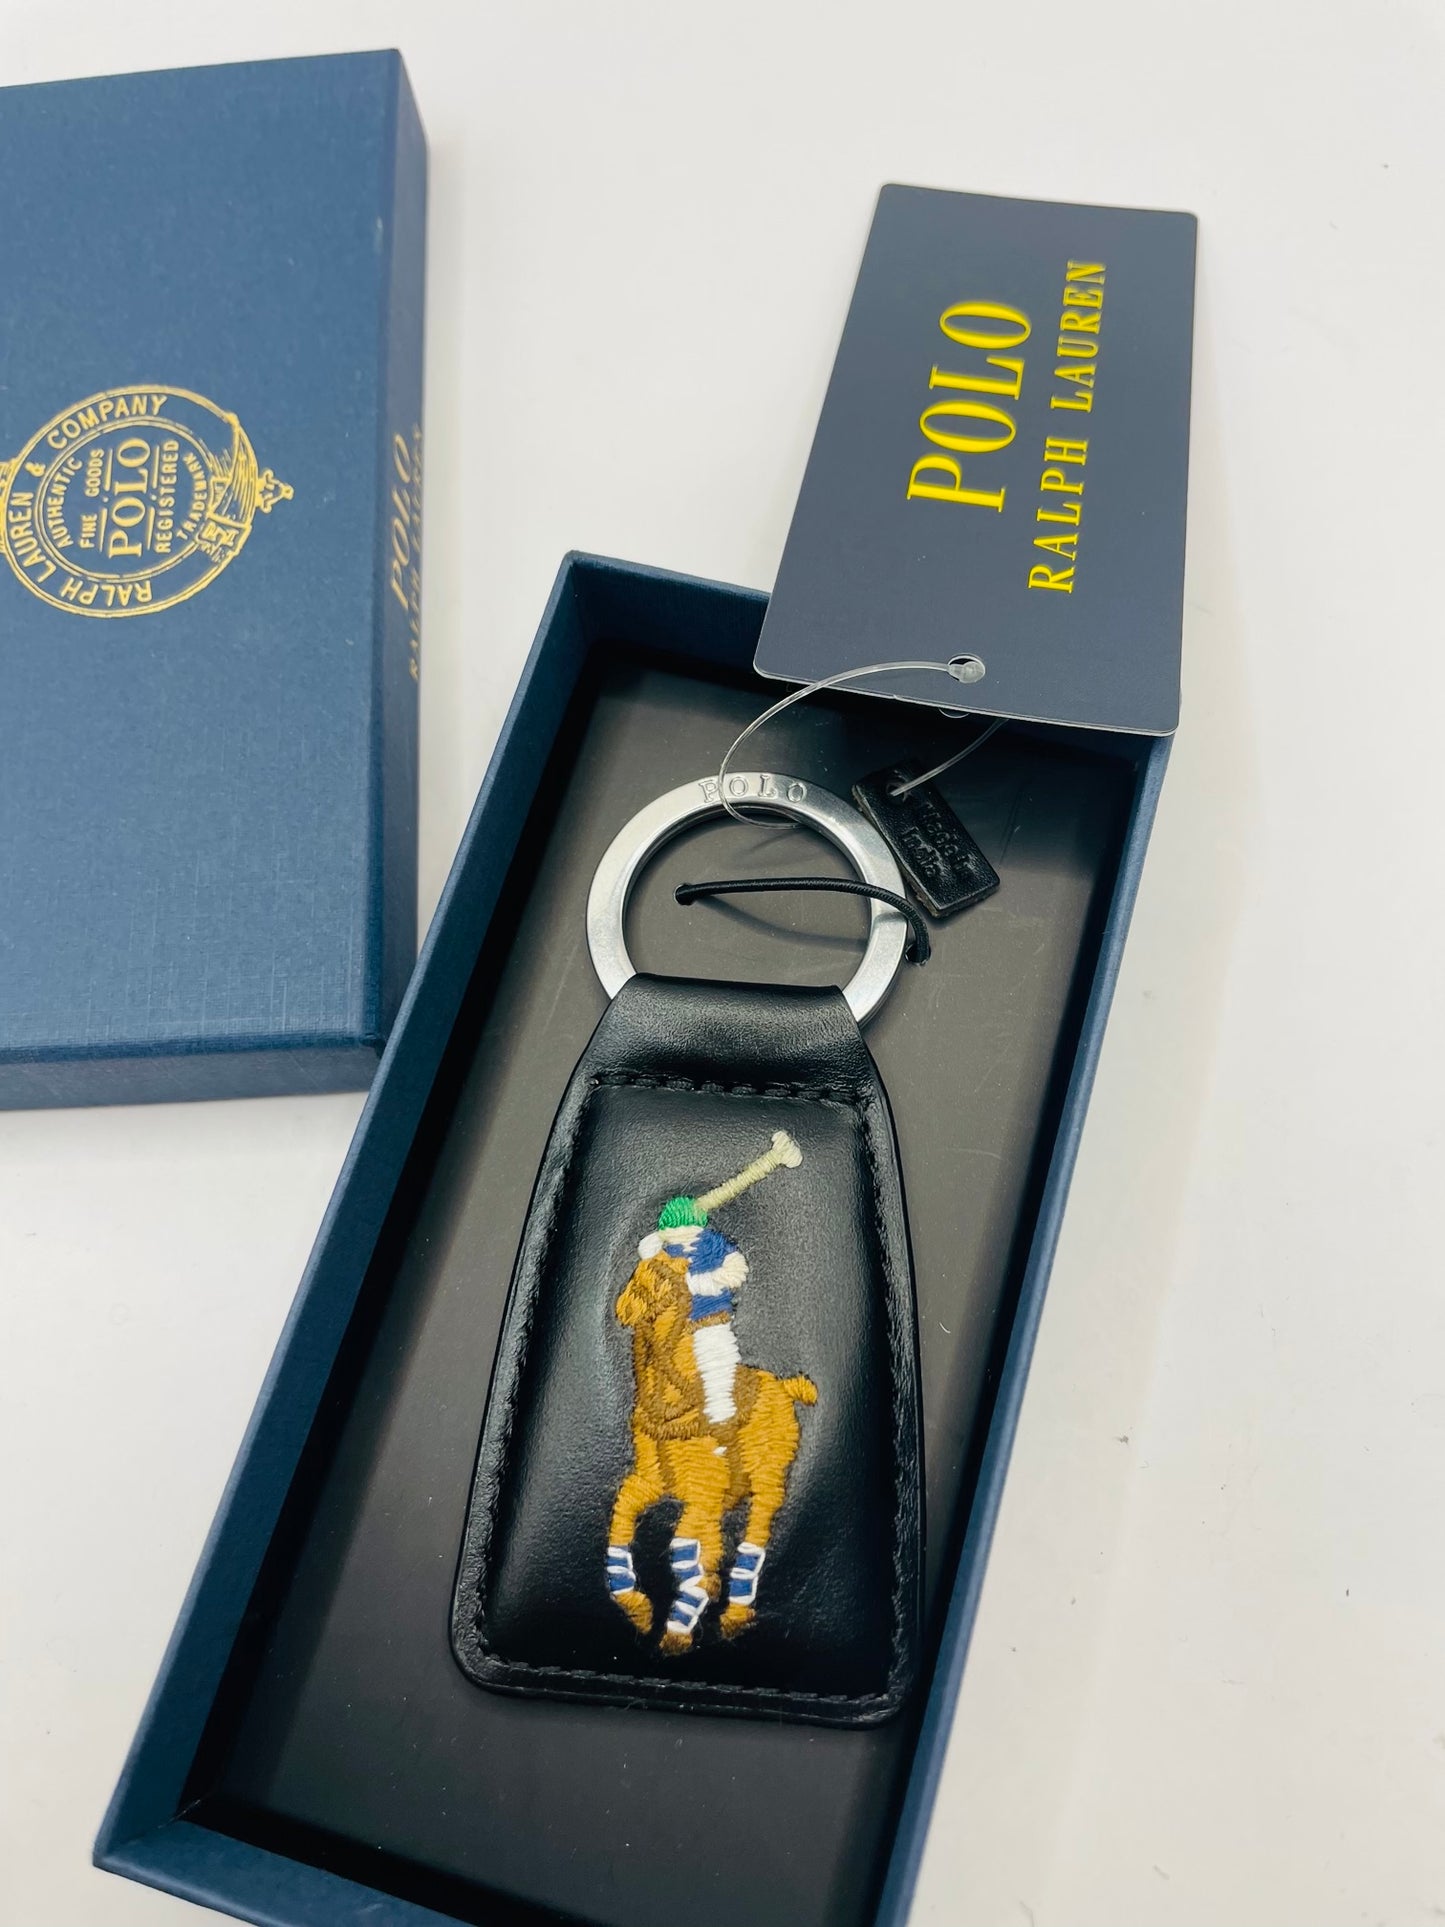 Ralph Lauren keychain